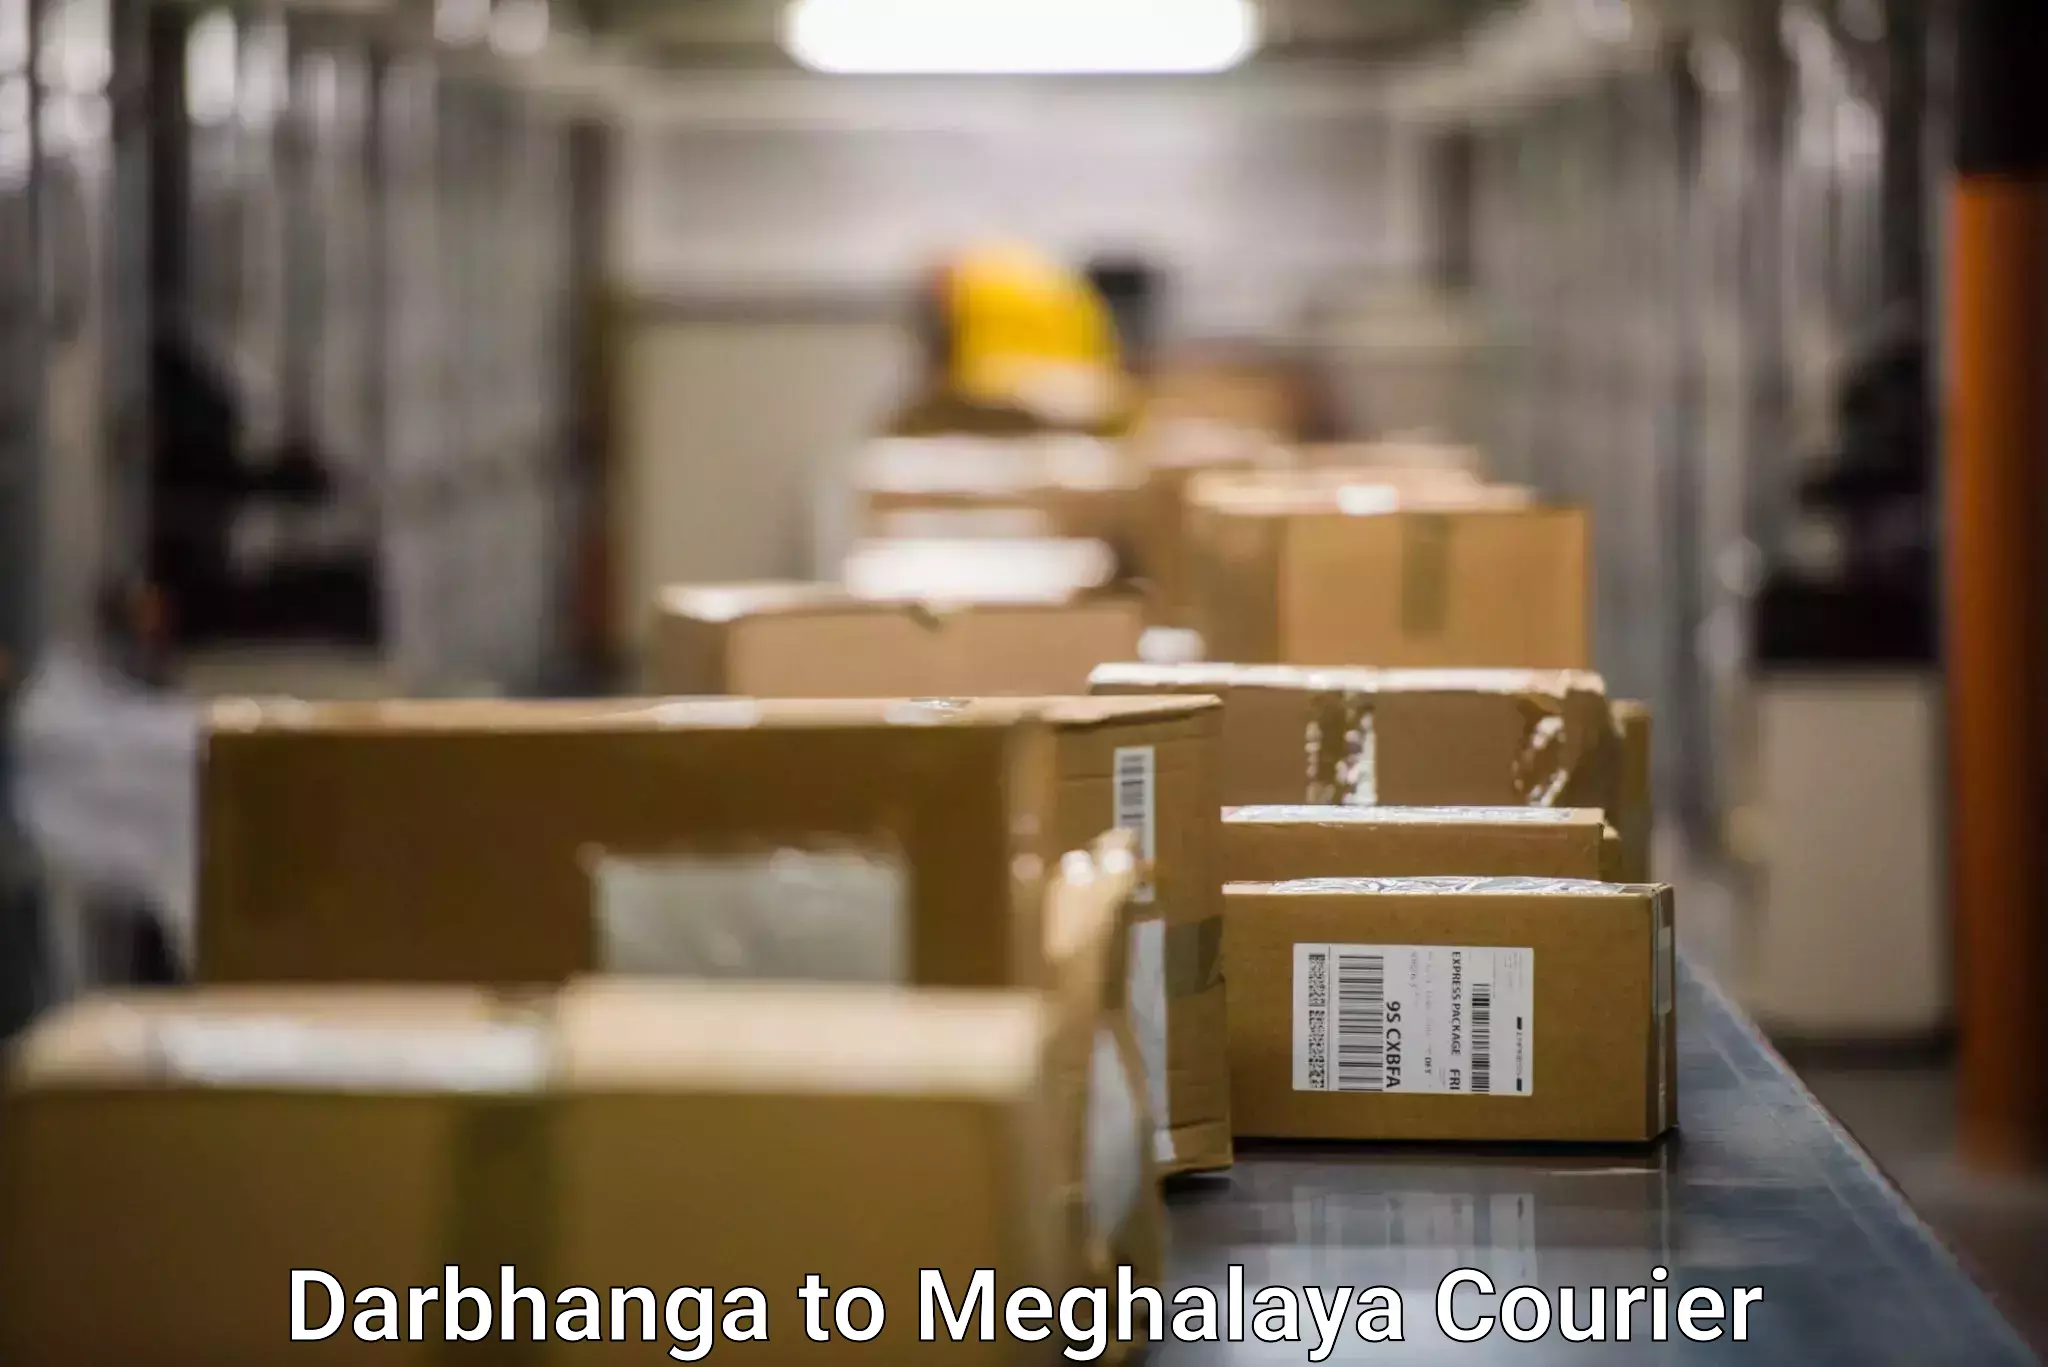 Comprehensive shipping network Darbhanga to Shillong